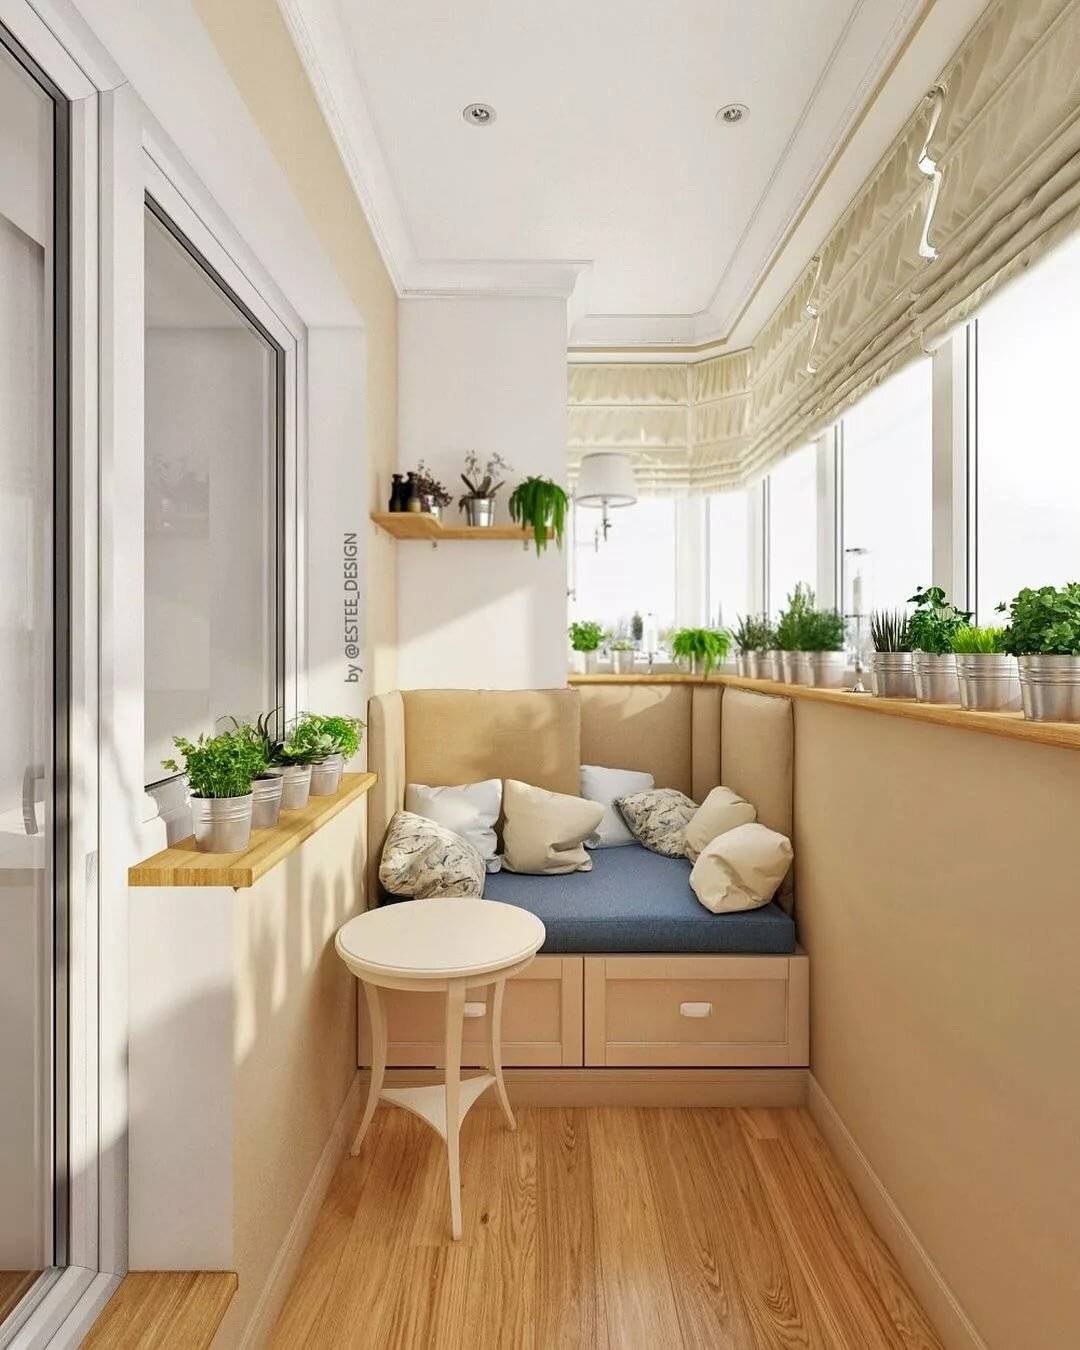 Обустройство балкона - топ-10 лучших решений для маленького балкона (47 фото идей) | дизайн и интерьер